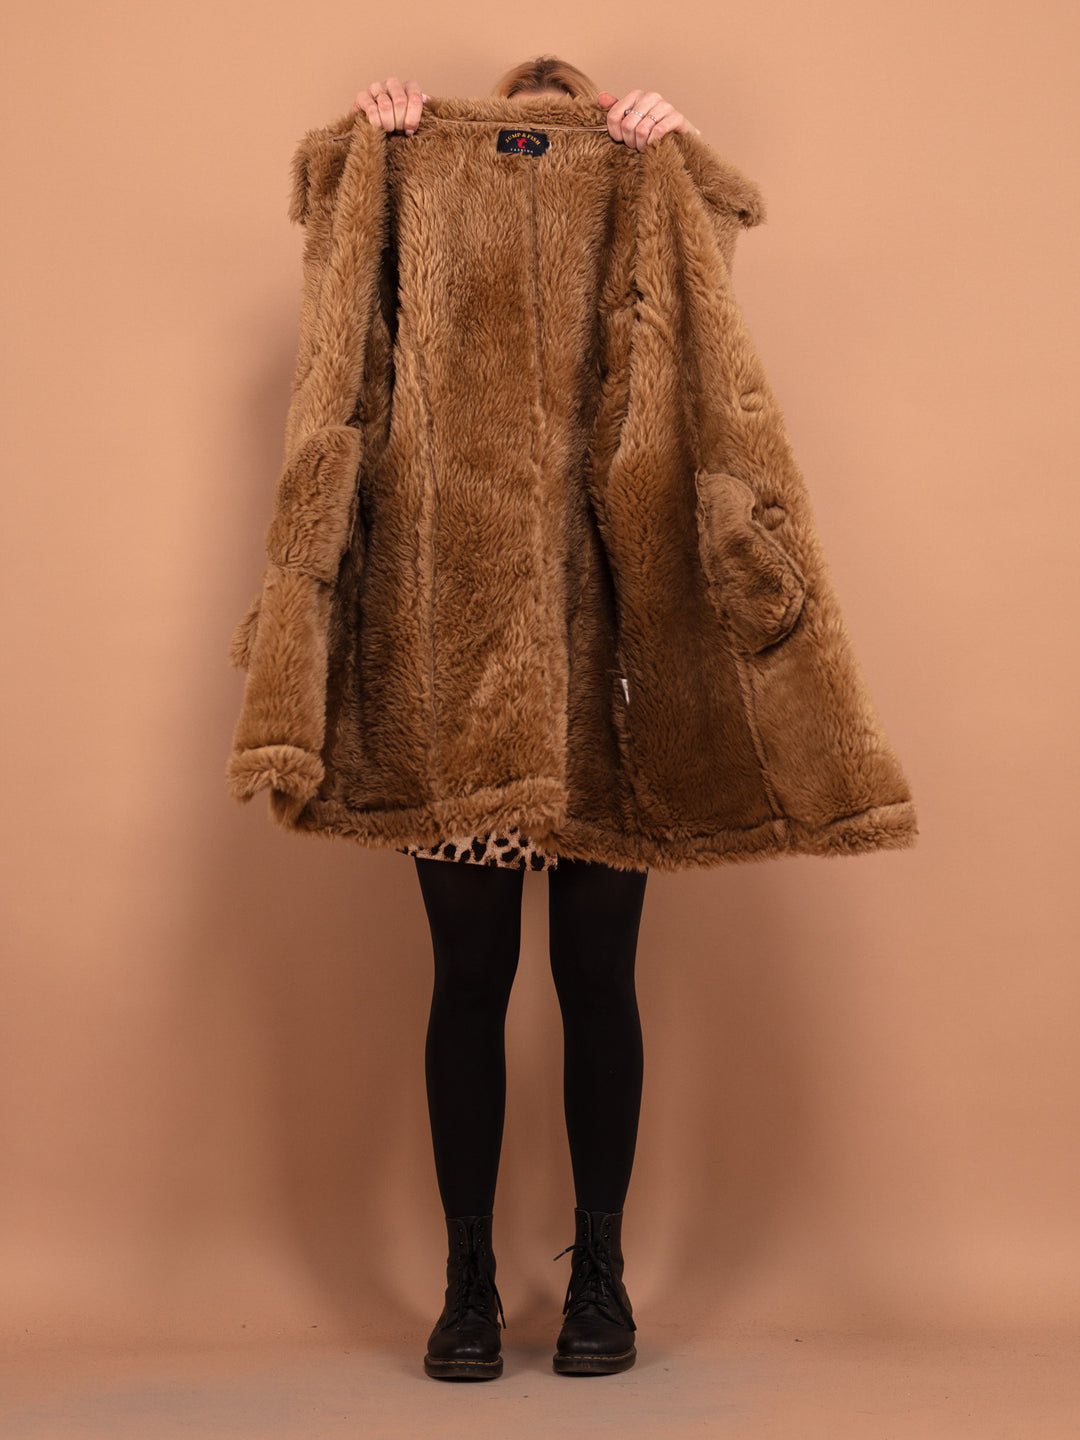 Hooded Faux Sheepskin Coat, Size M,  Penny Lane Coat, Vintage 90s Sheepskin Coat, Womens Clothing, Cozy Coat, Retro Coat With Hood